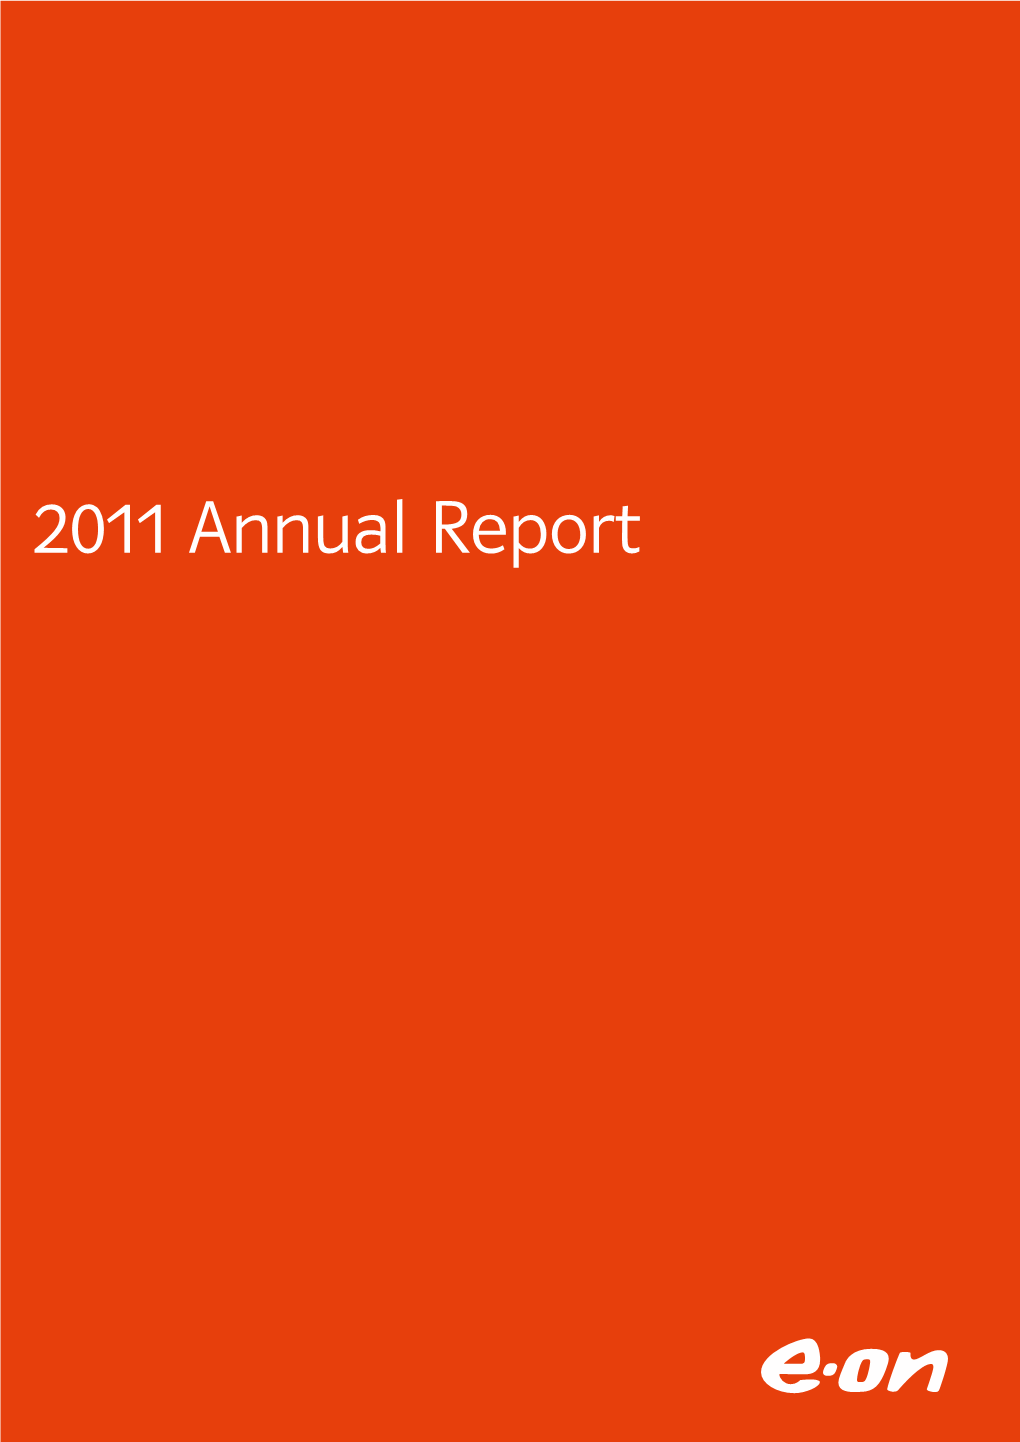 E.ON 2011 Annual Report